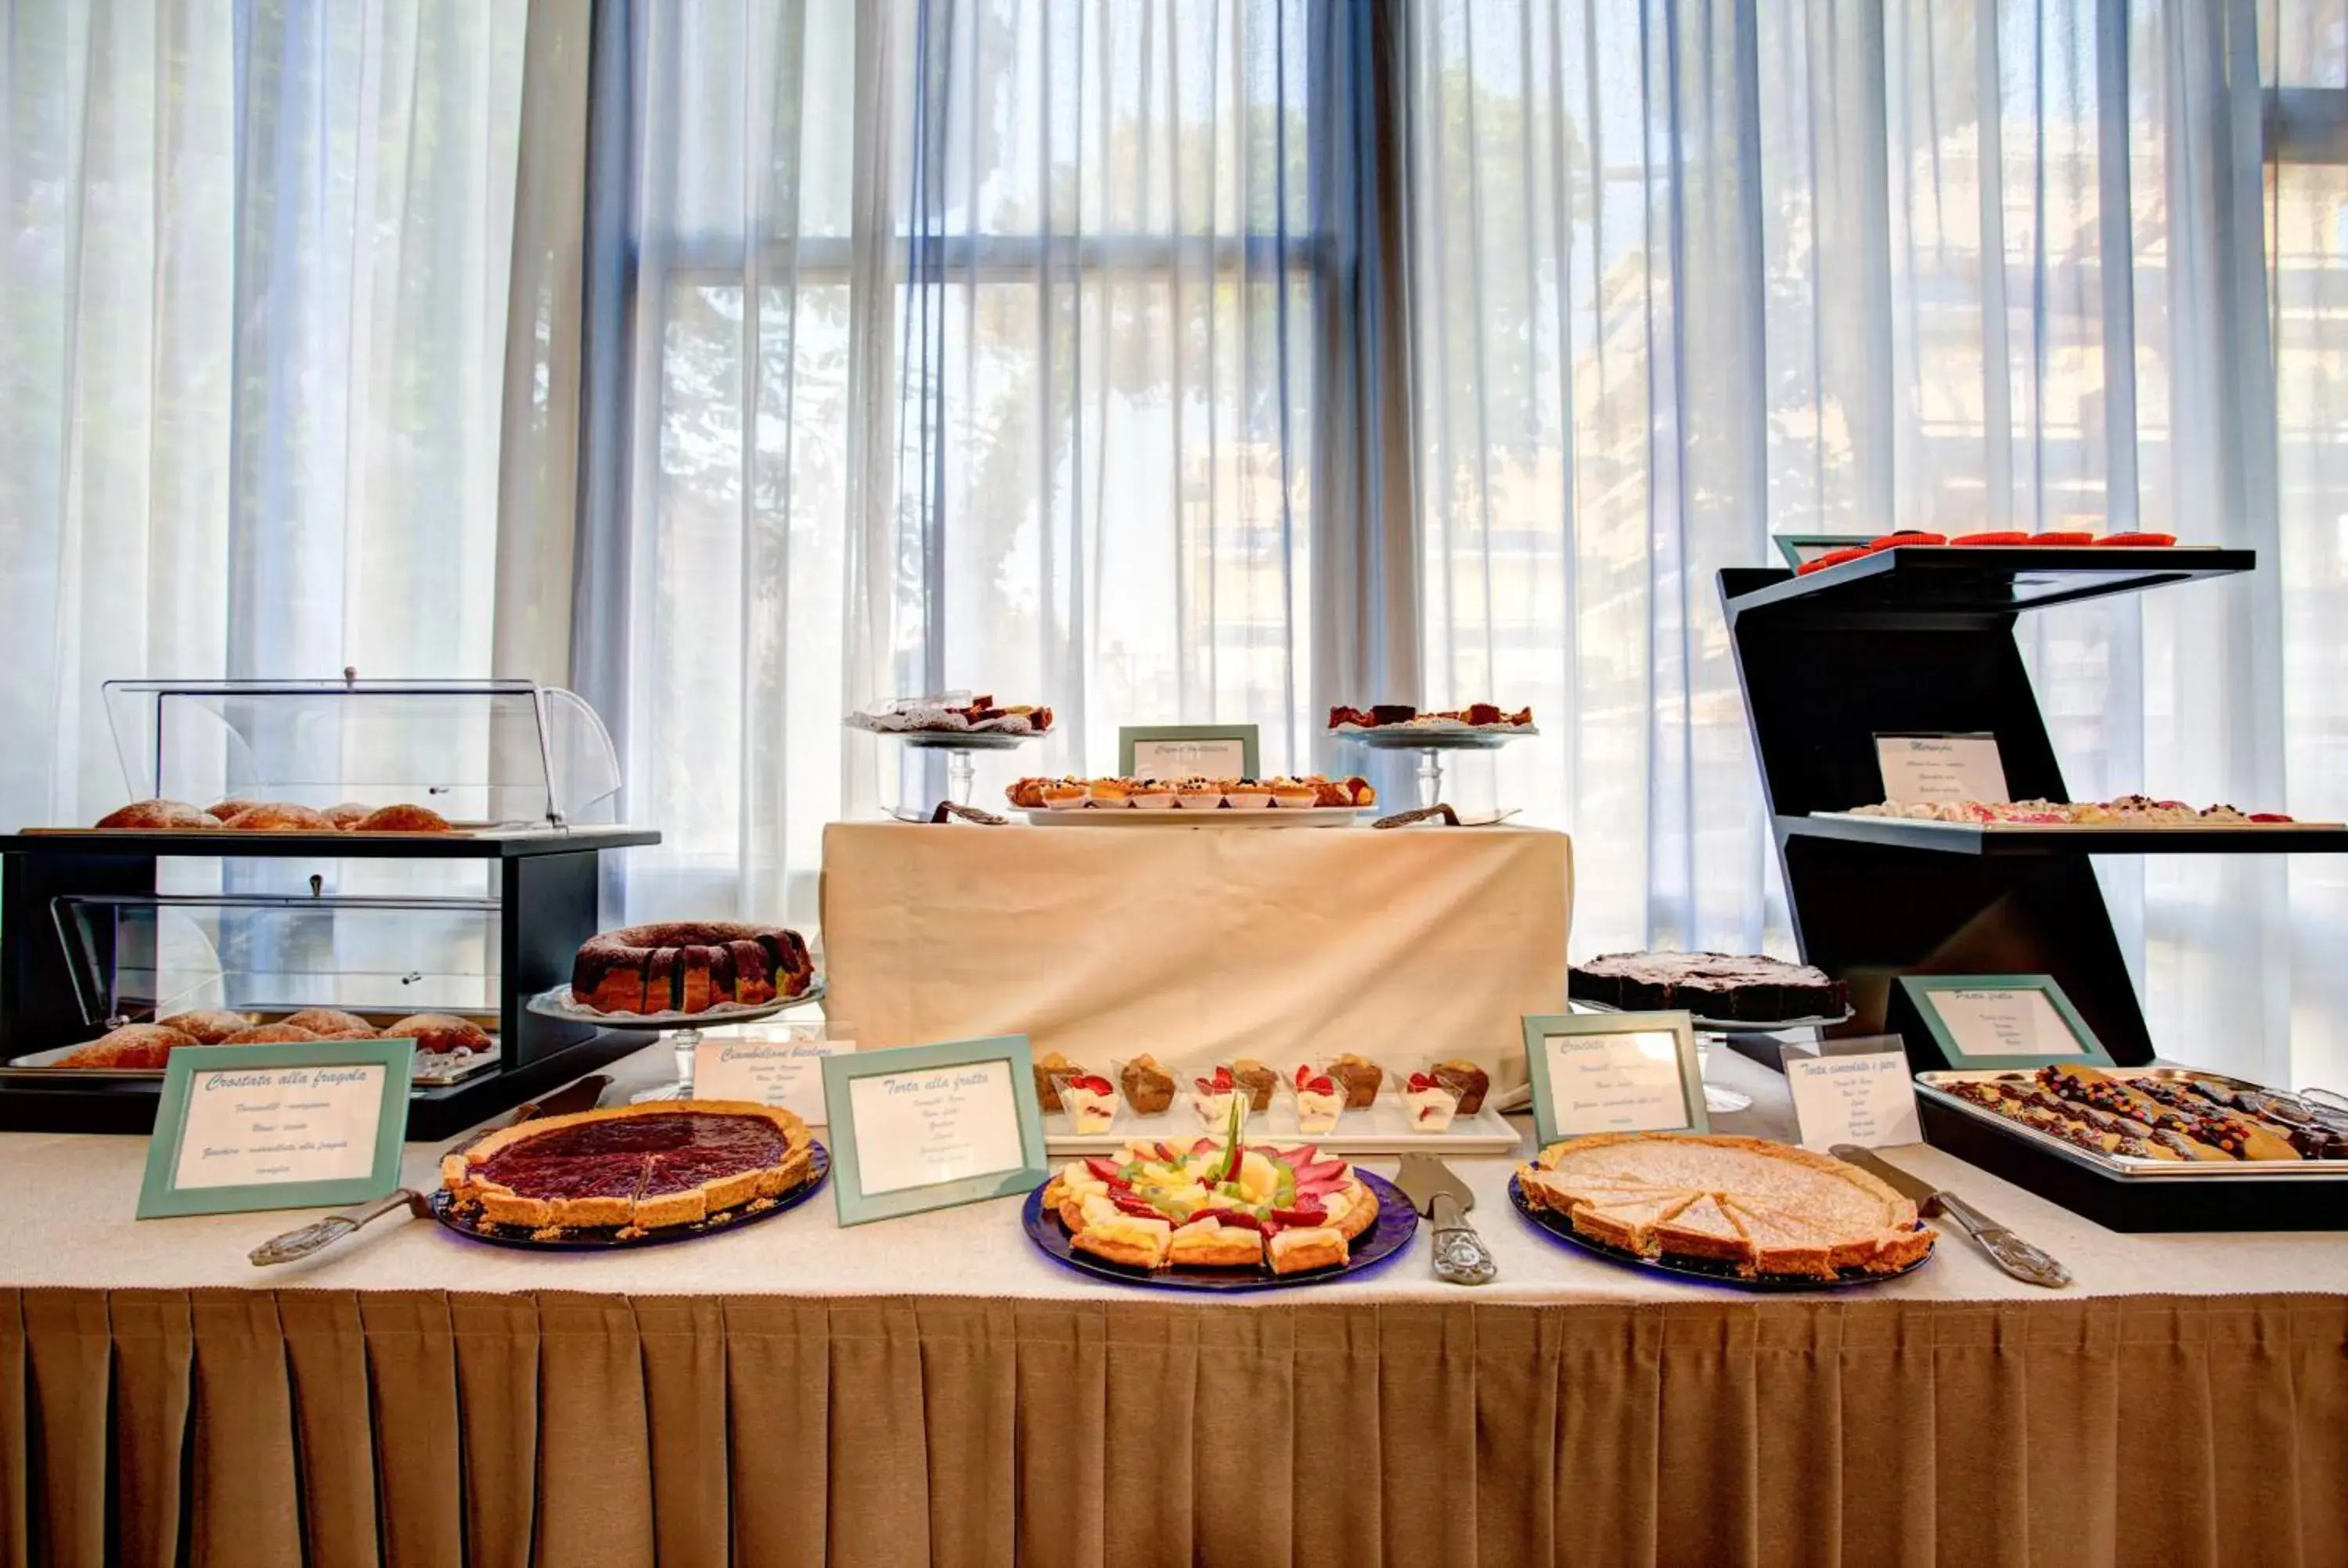 Buffet breakfast in Hotel Cimarosa